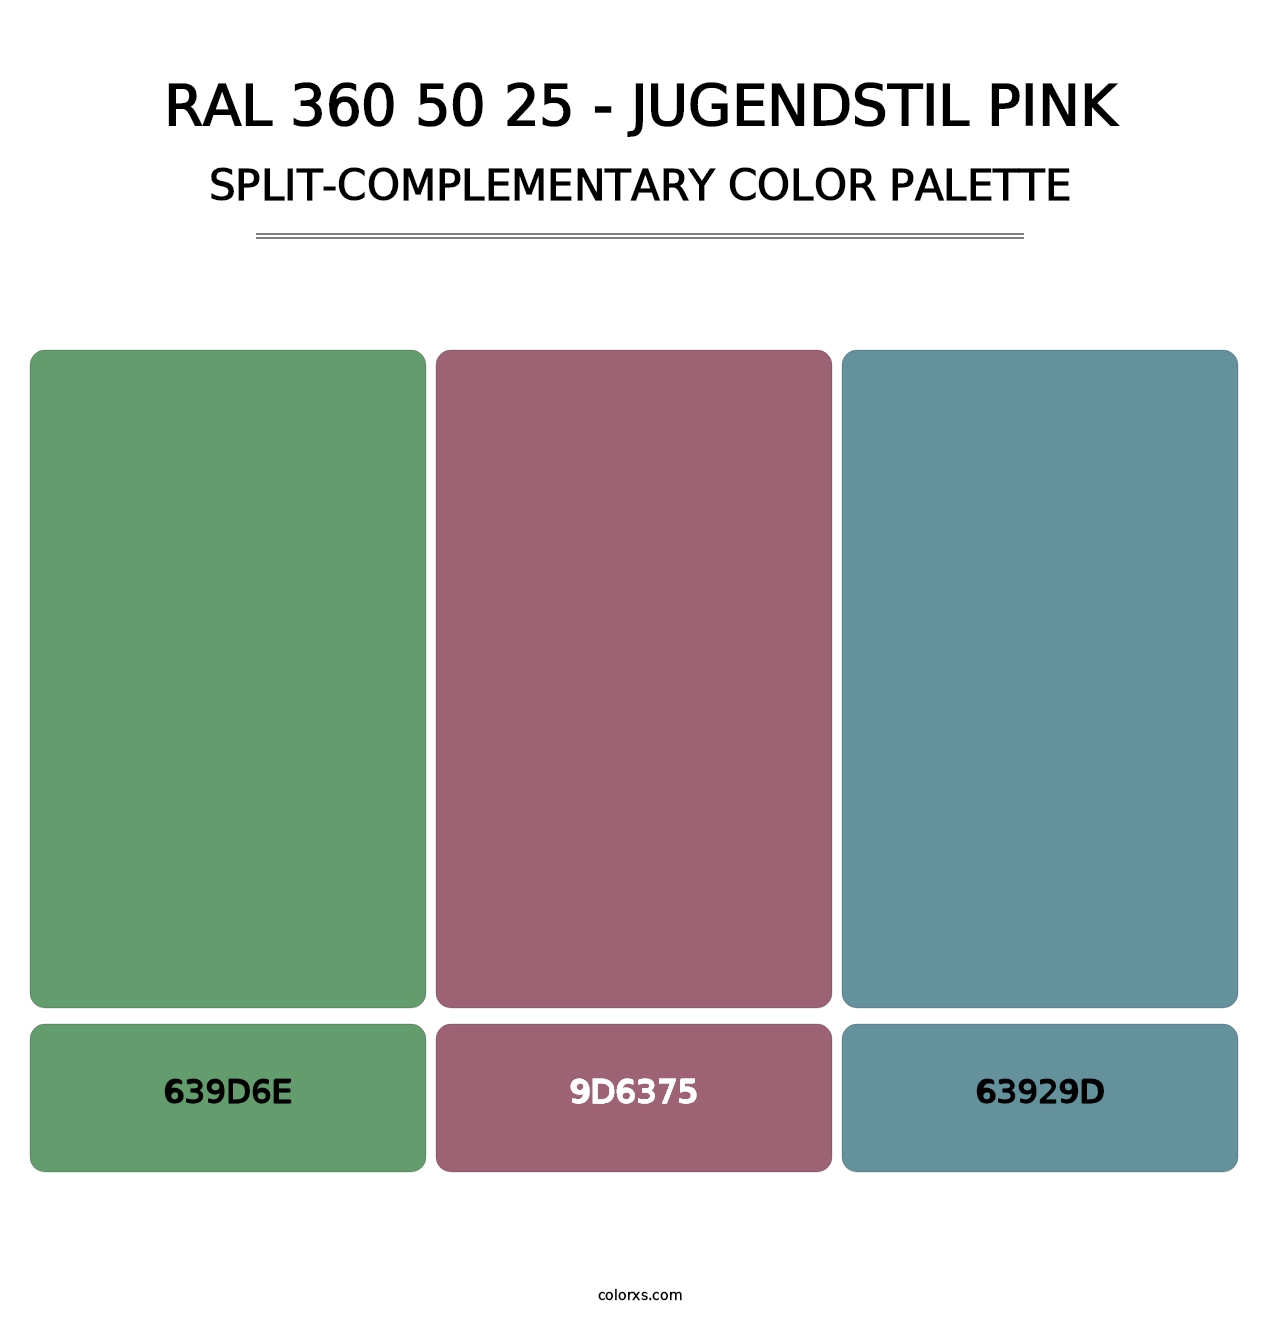 RAL 360 50 25 - Jugendstil Pink - Split-Complementary Color Palette